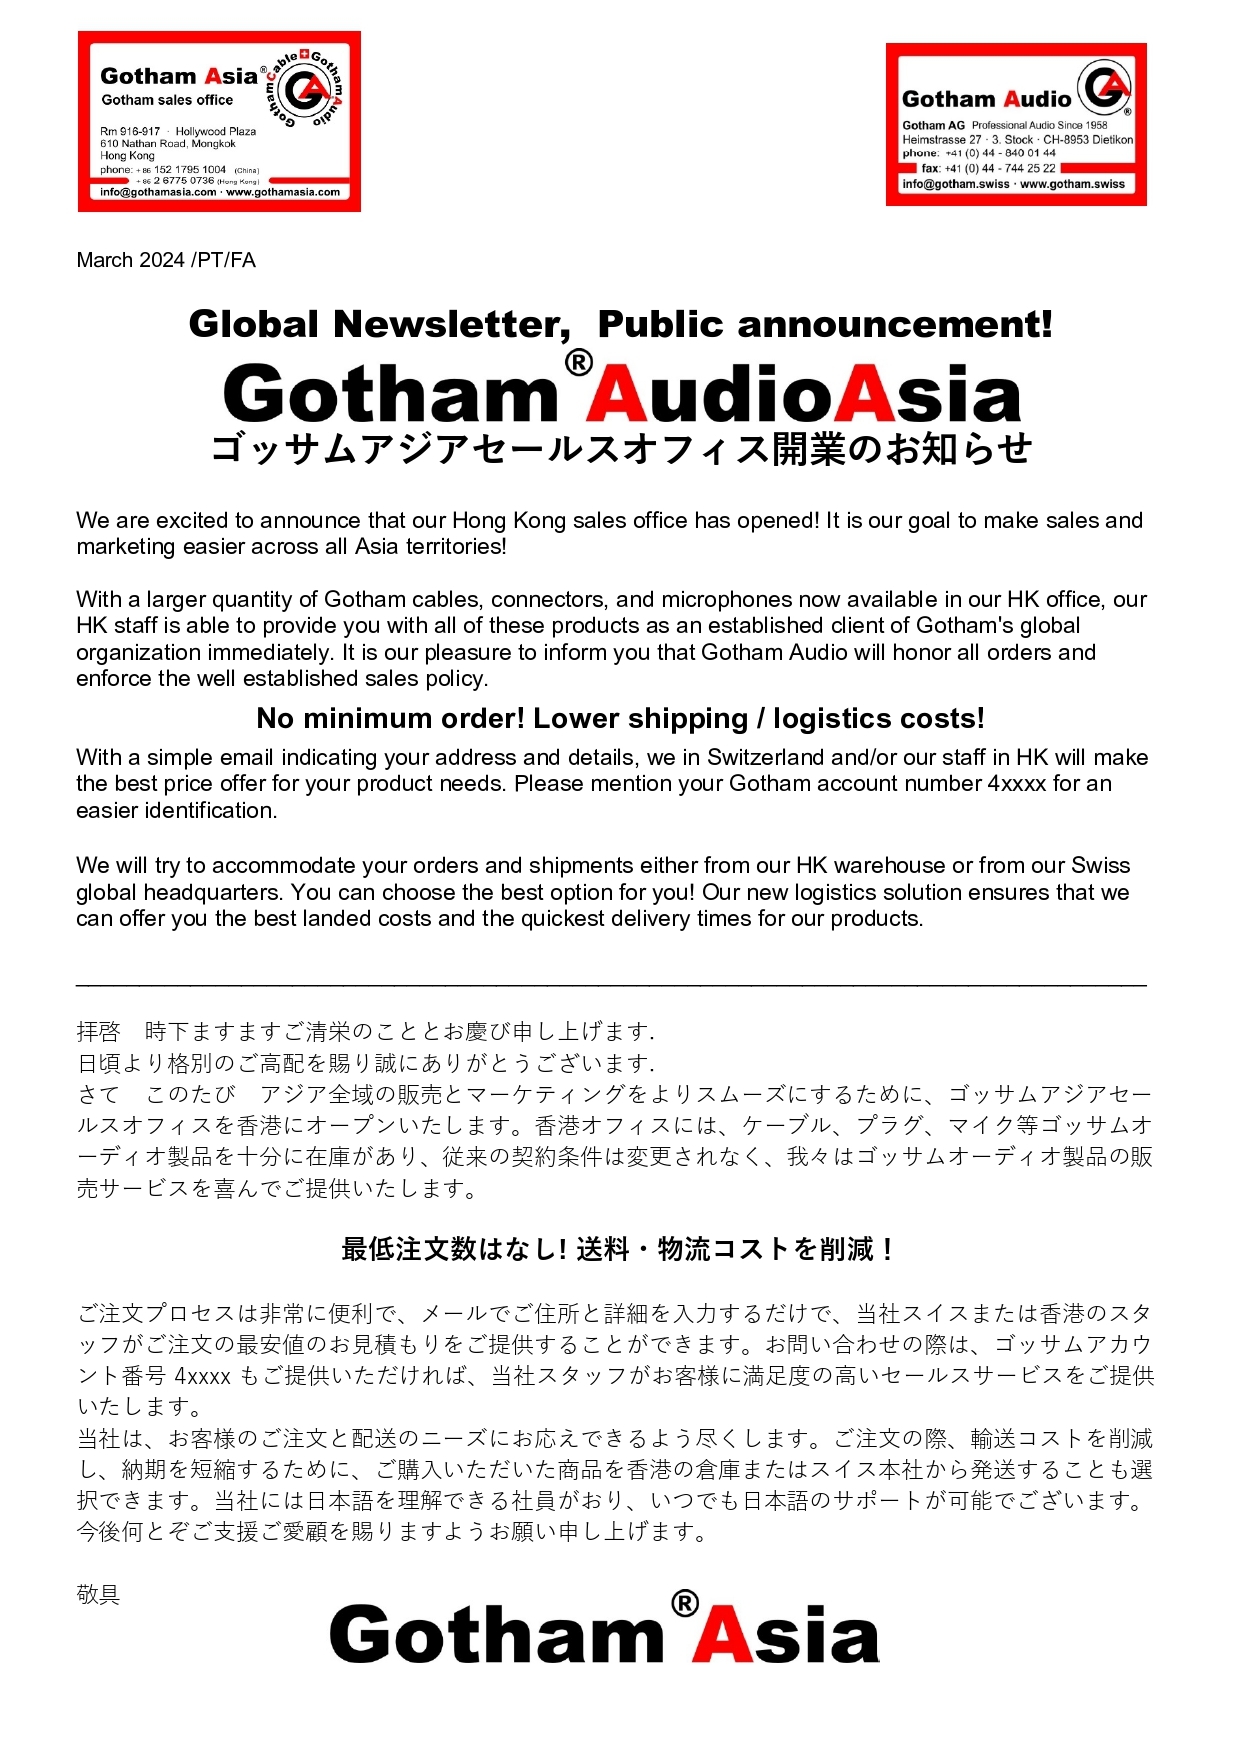 Gotham Asia Sales Office ゴッサムアジアセールスオフィス開業のお知らせ